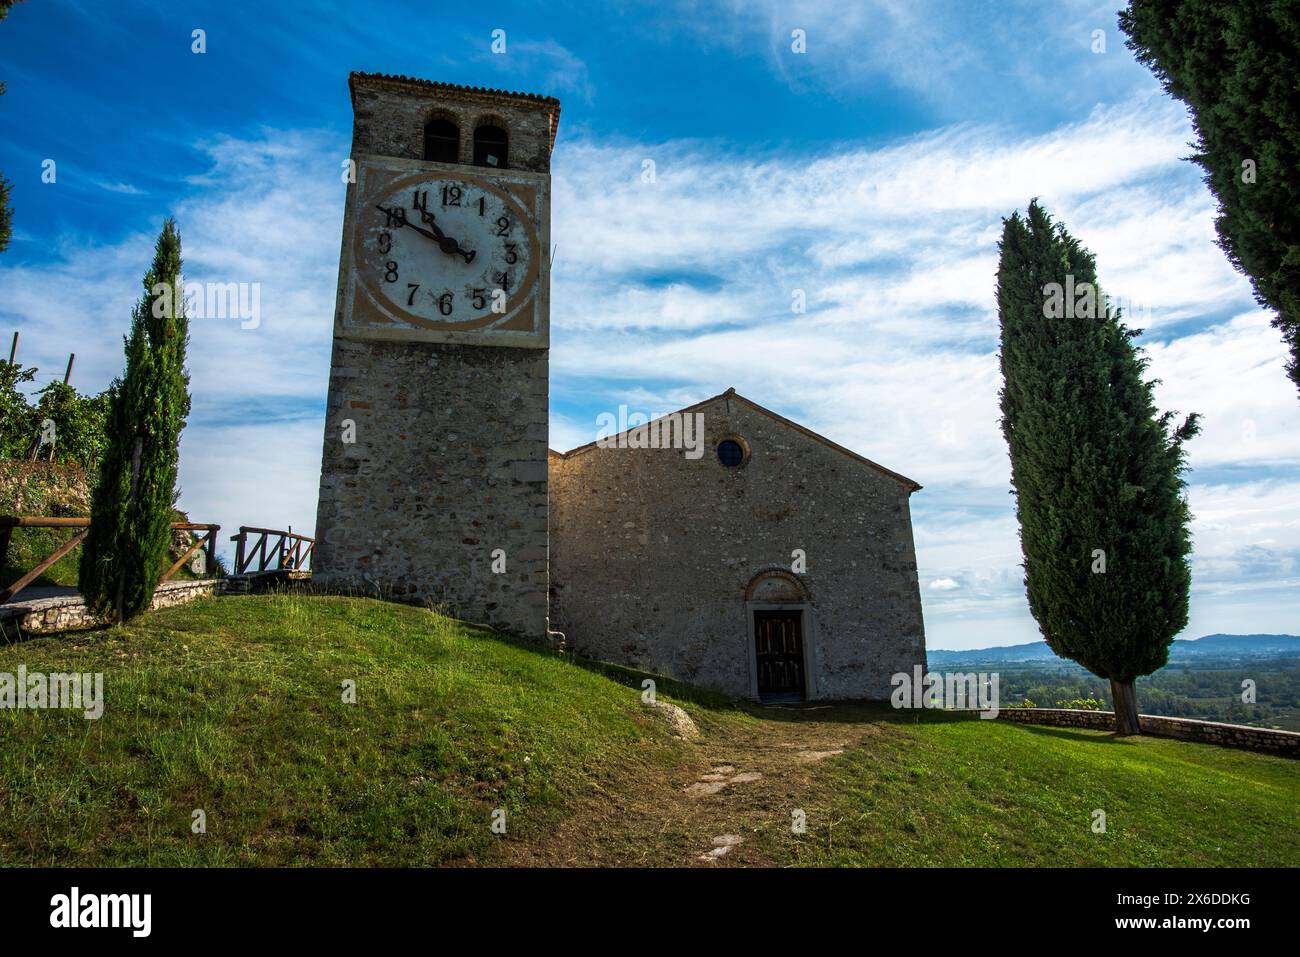 Landkirche mit Glockenturm mit Uhr in den Prosecco-Hügeln in der Nähe von Vidor Treviso Veneto Italien Stockfoto